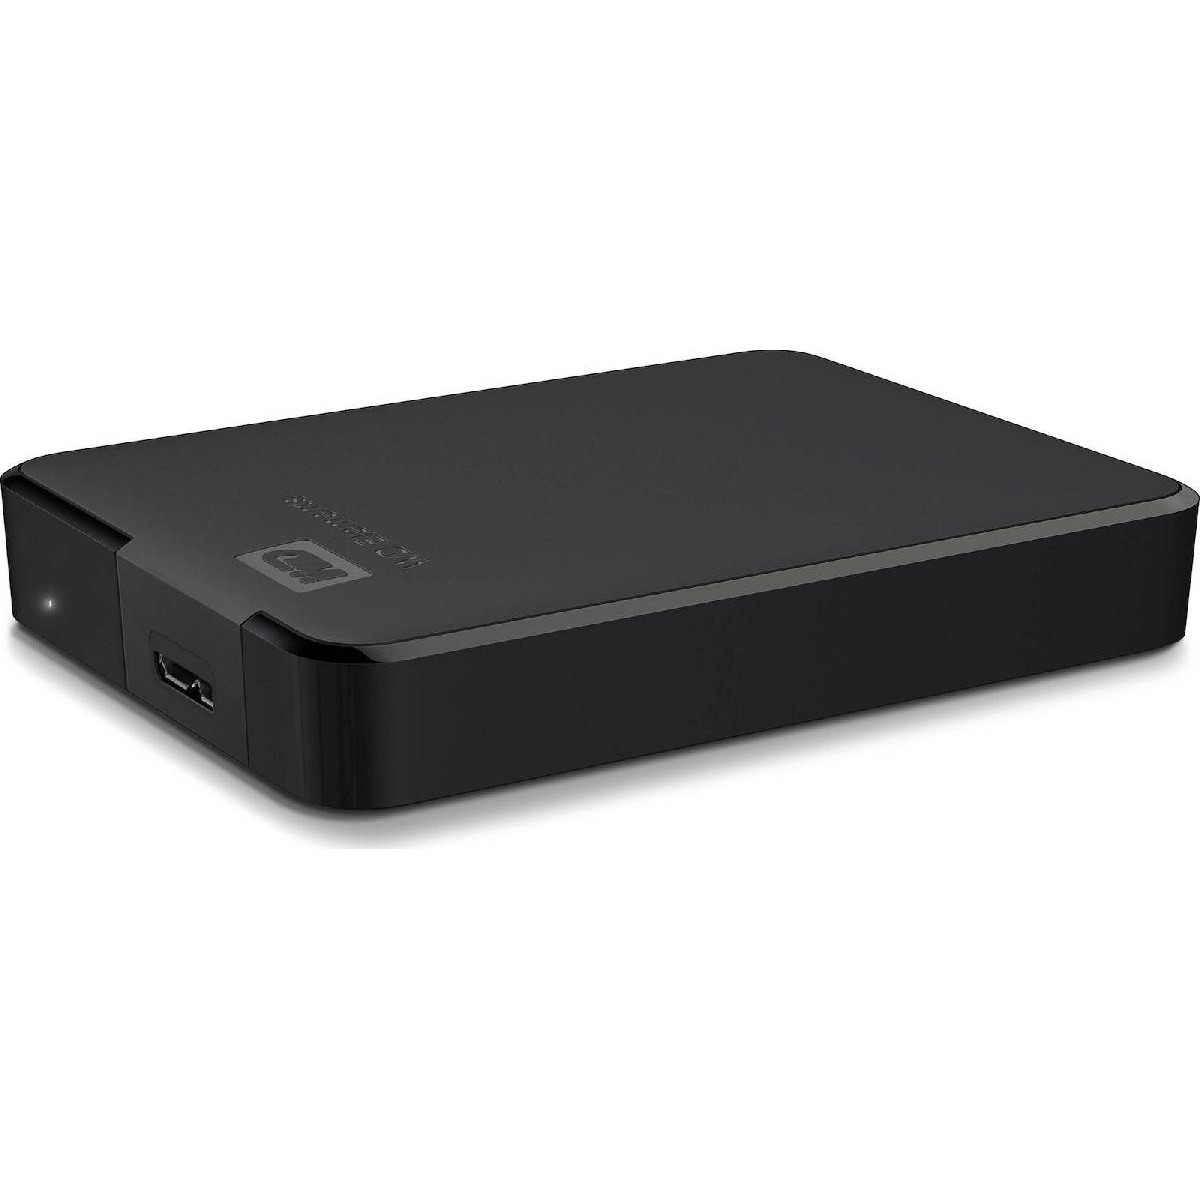 Western Digital Elements Portable USB 3.0 HDD Extern 4TB black (WDBU6Y0040BBK)